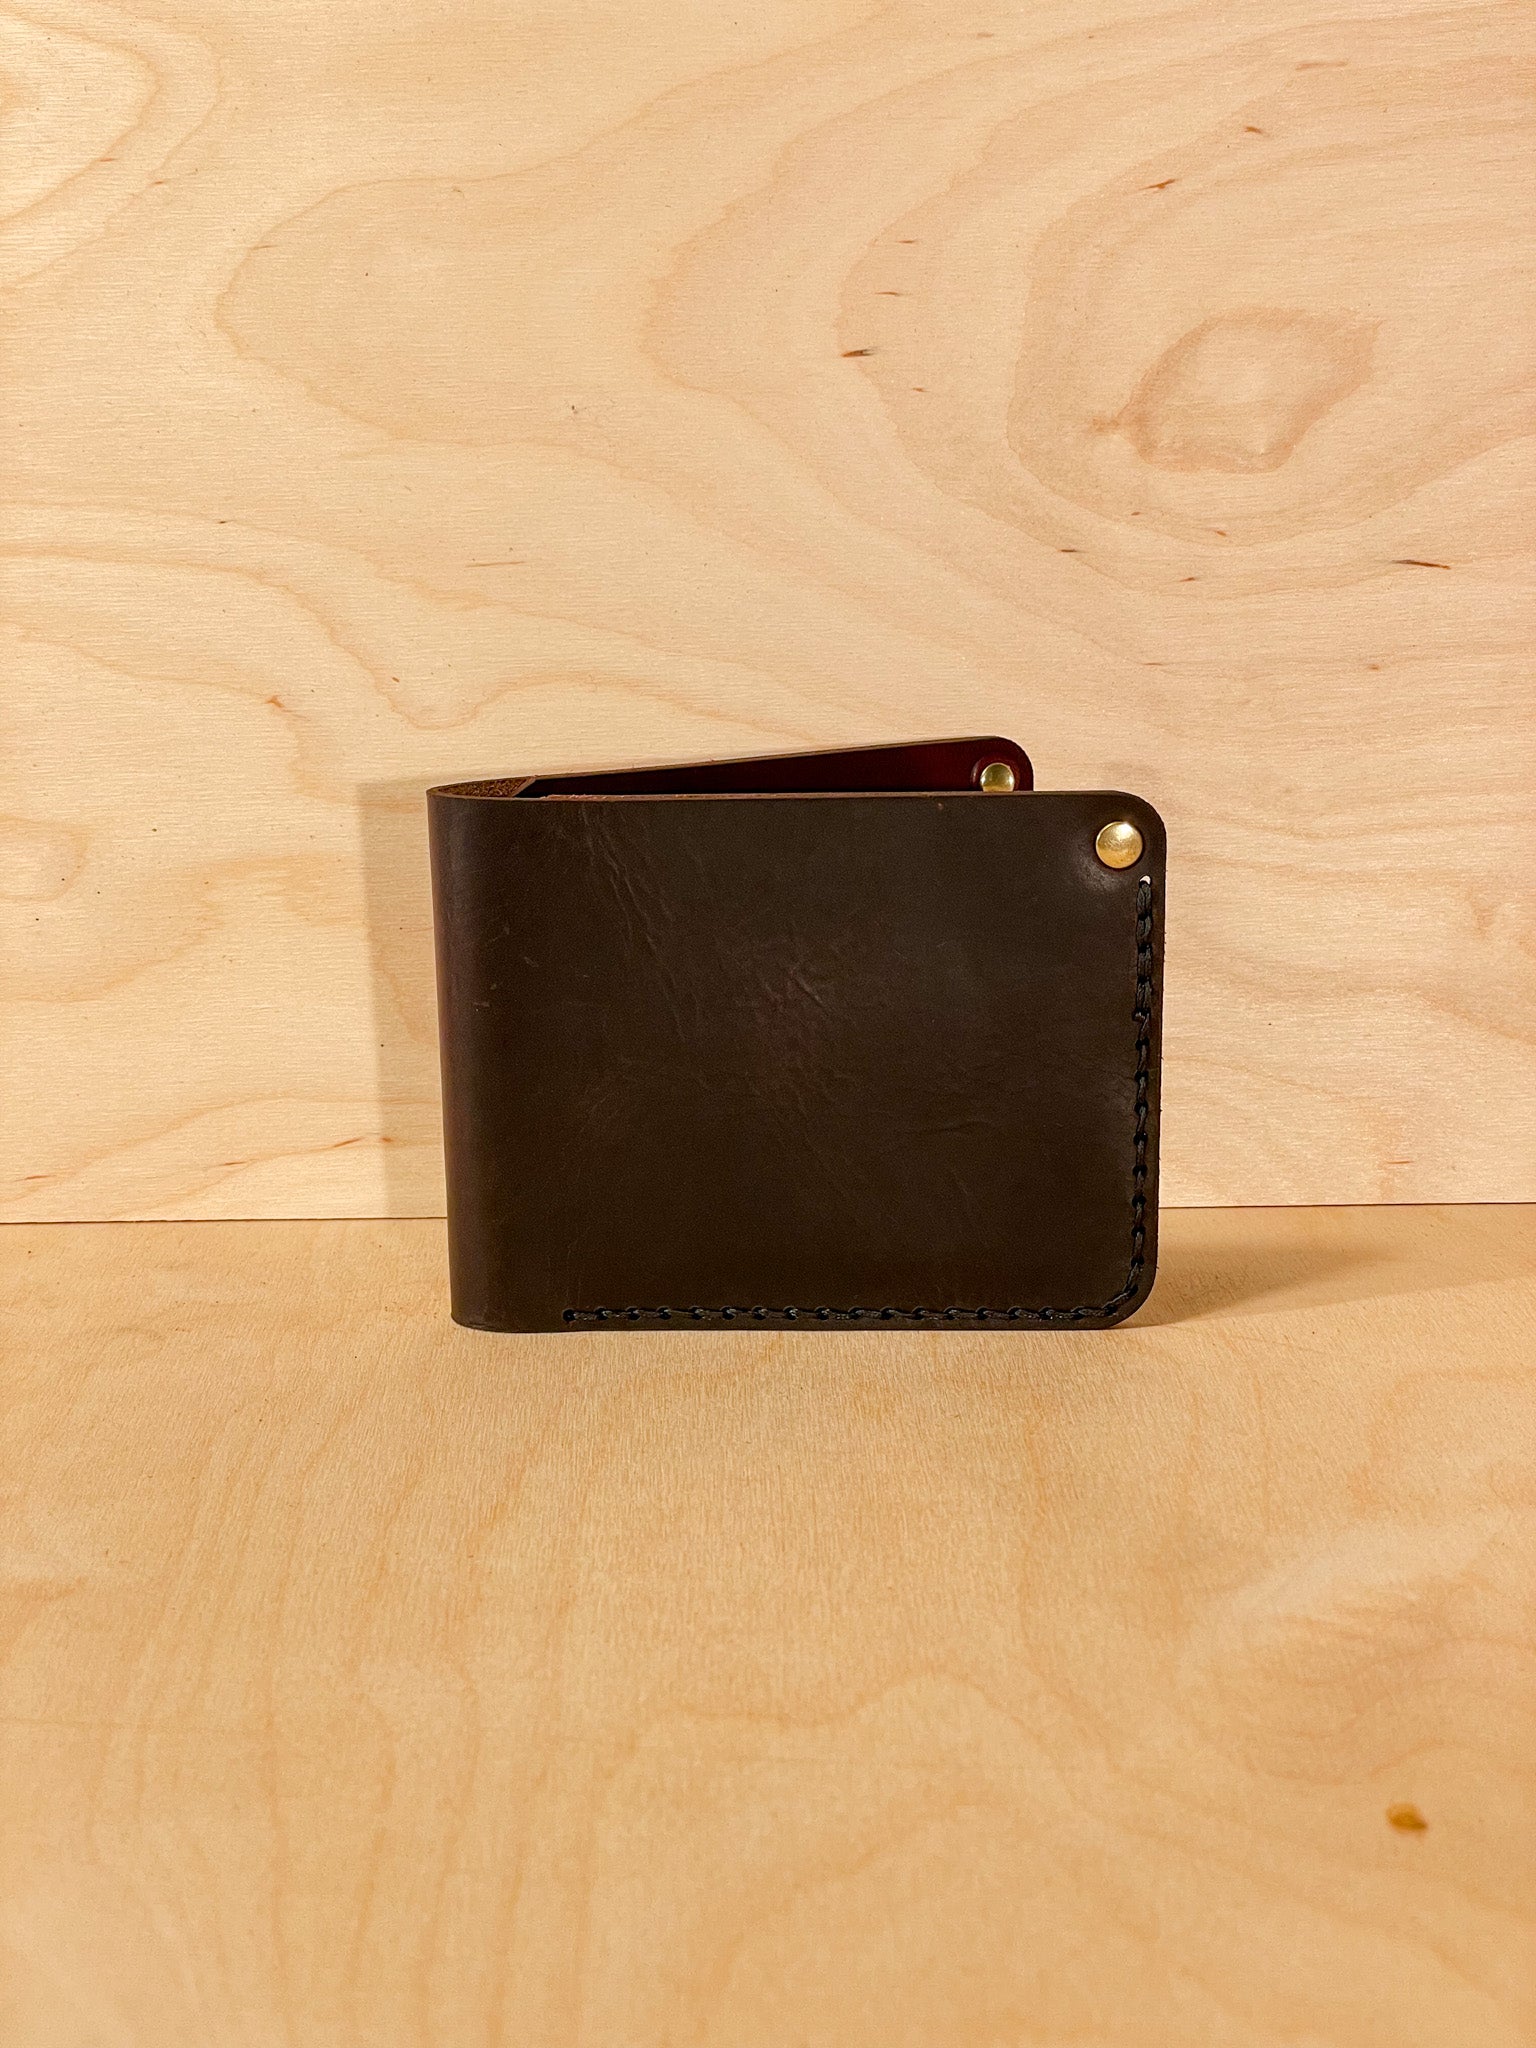 Gringo Bifold Leather Wallet OOAK 3